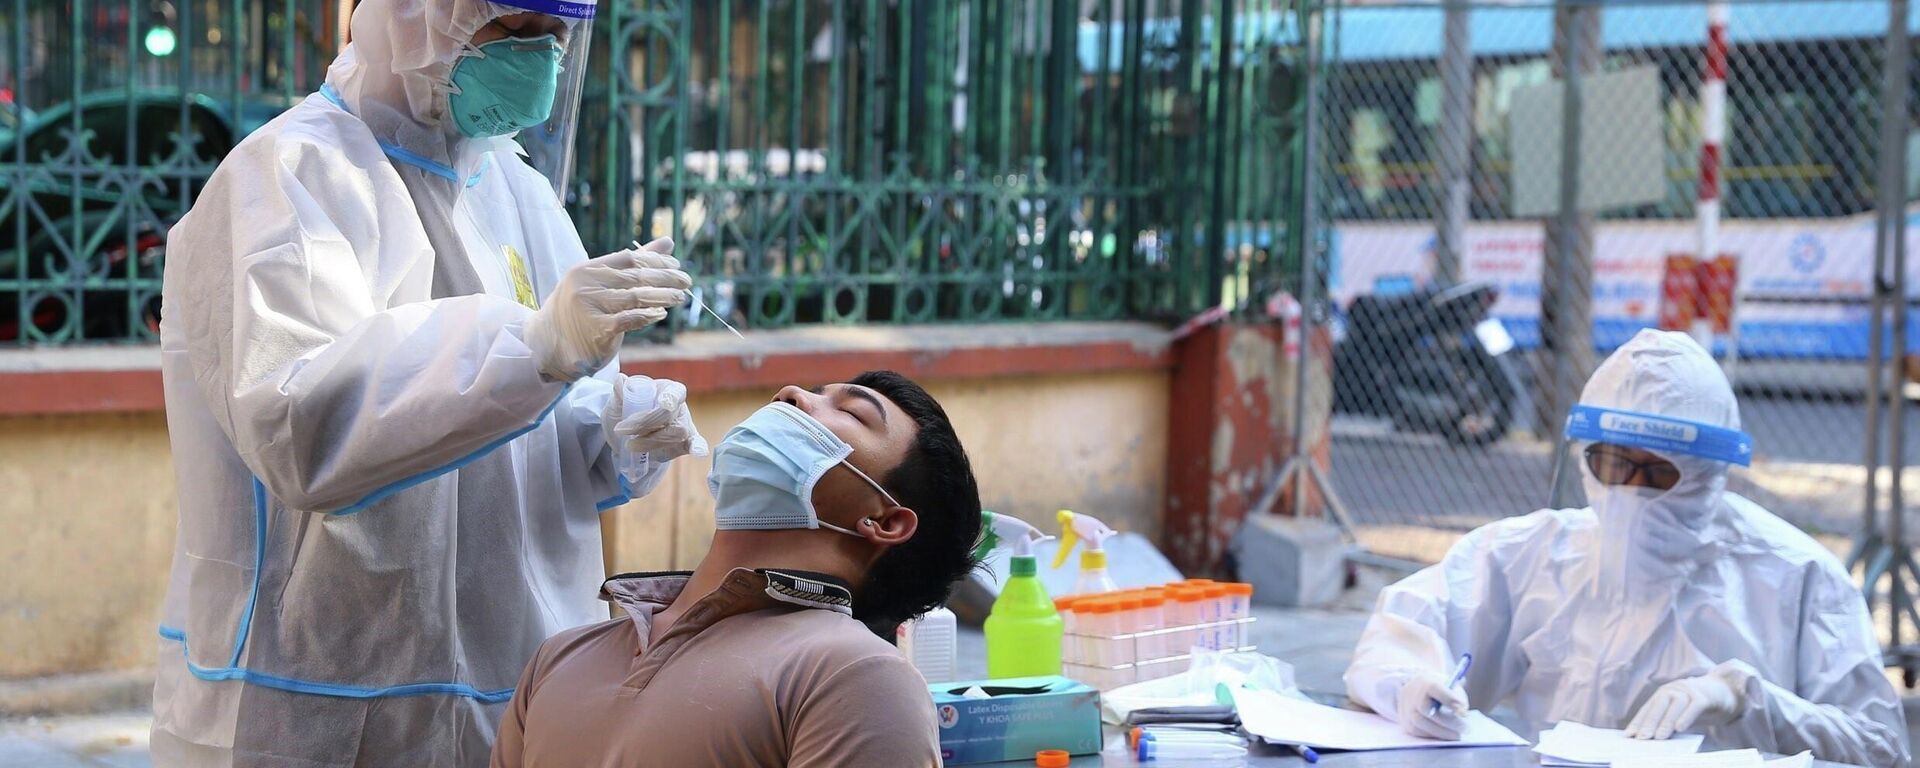 Nhân viên y tế lấy mẫu xét nghiệm sàng lọc COVID-19 cho người dân trong khu vực bị phong tỏa thuộc phường Nguyễn Du (Hà Nội) - Sputnik Việt Nam, 1920, 11.01.2022